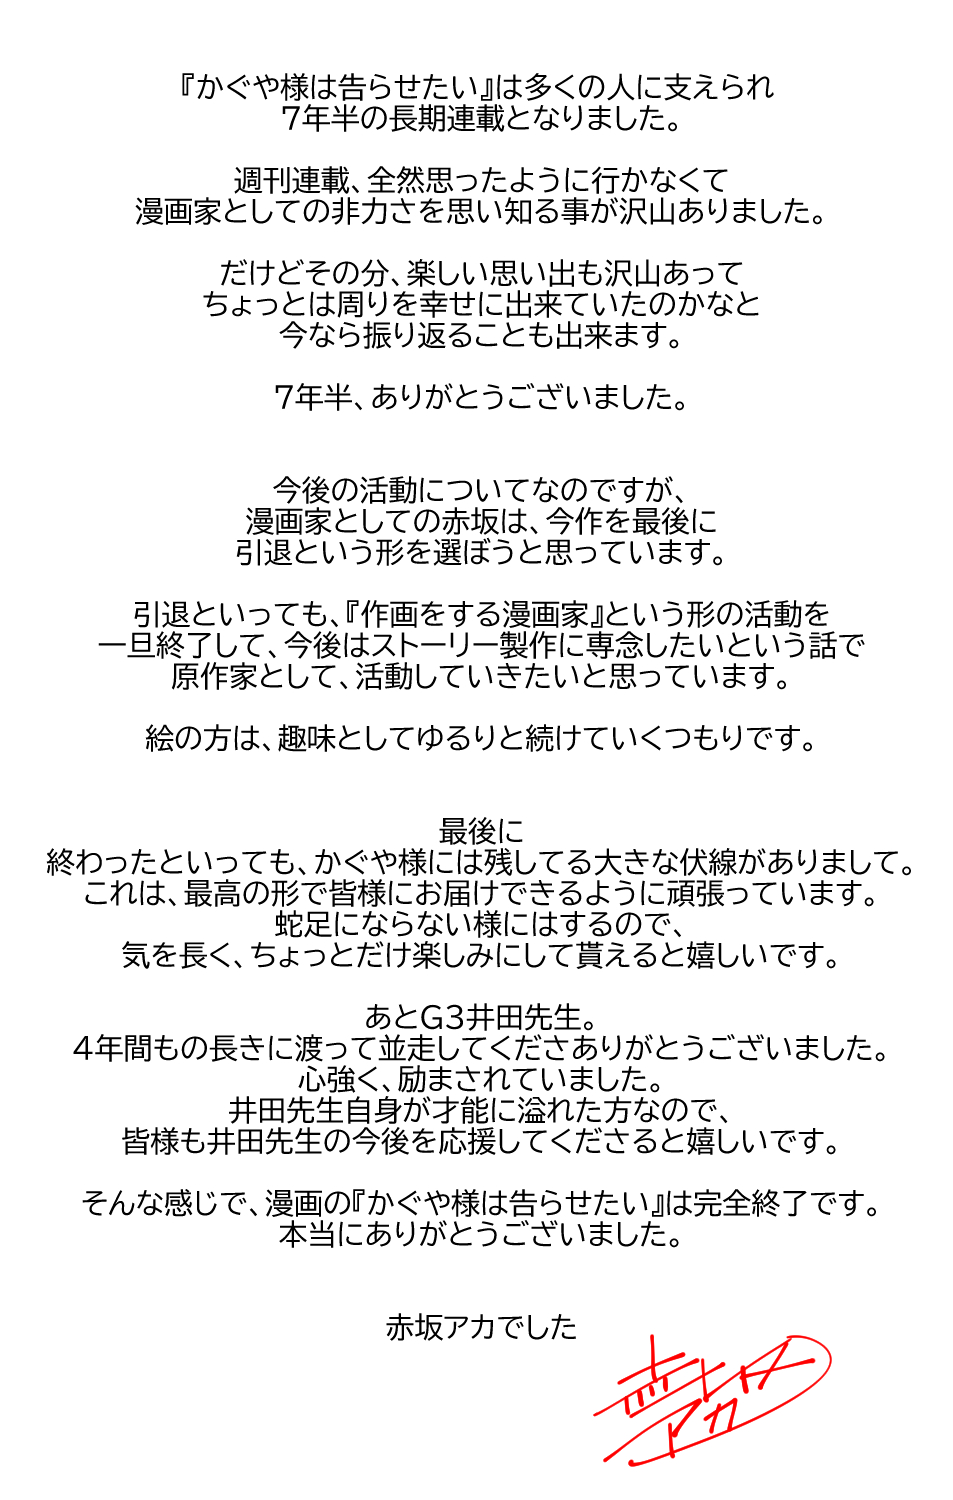 Aka Akasaka, autor de Kaguya-sama: Love is War anuncia que vai se aposentar  como ilustrador de mangás - Crunchyroll Notícias